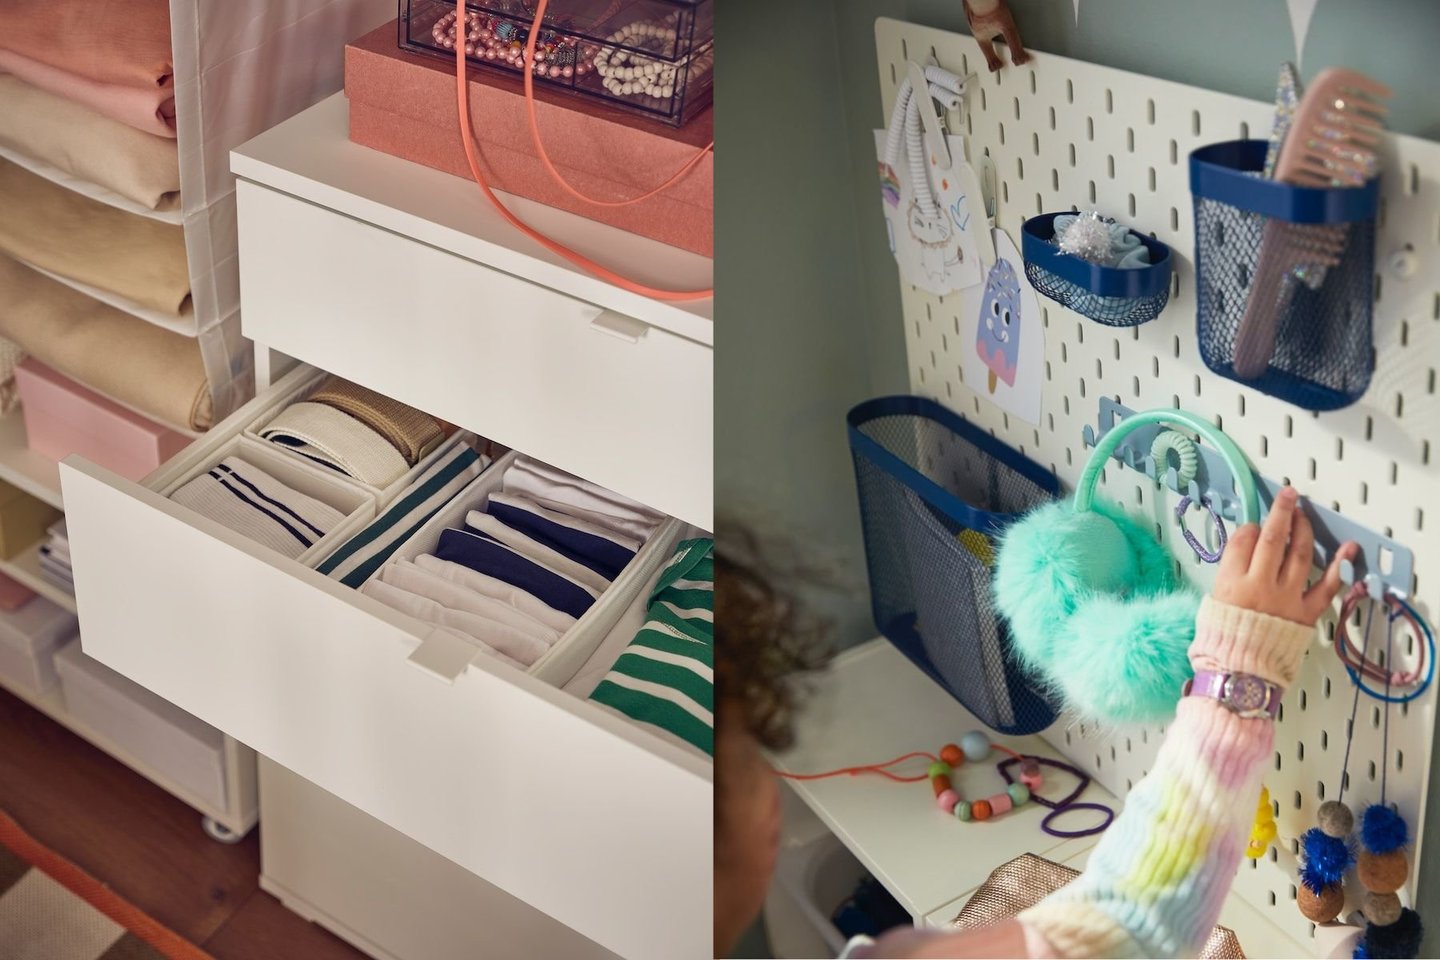 Interjero dizainerė teigia, kad dedikavus konkretiems daiktams konkrečias vietas – lengviau palaikyti tvarką ne tik tėvams, bet ir tvarkytis patiems vaikams.<br> IKEA nuotr.